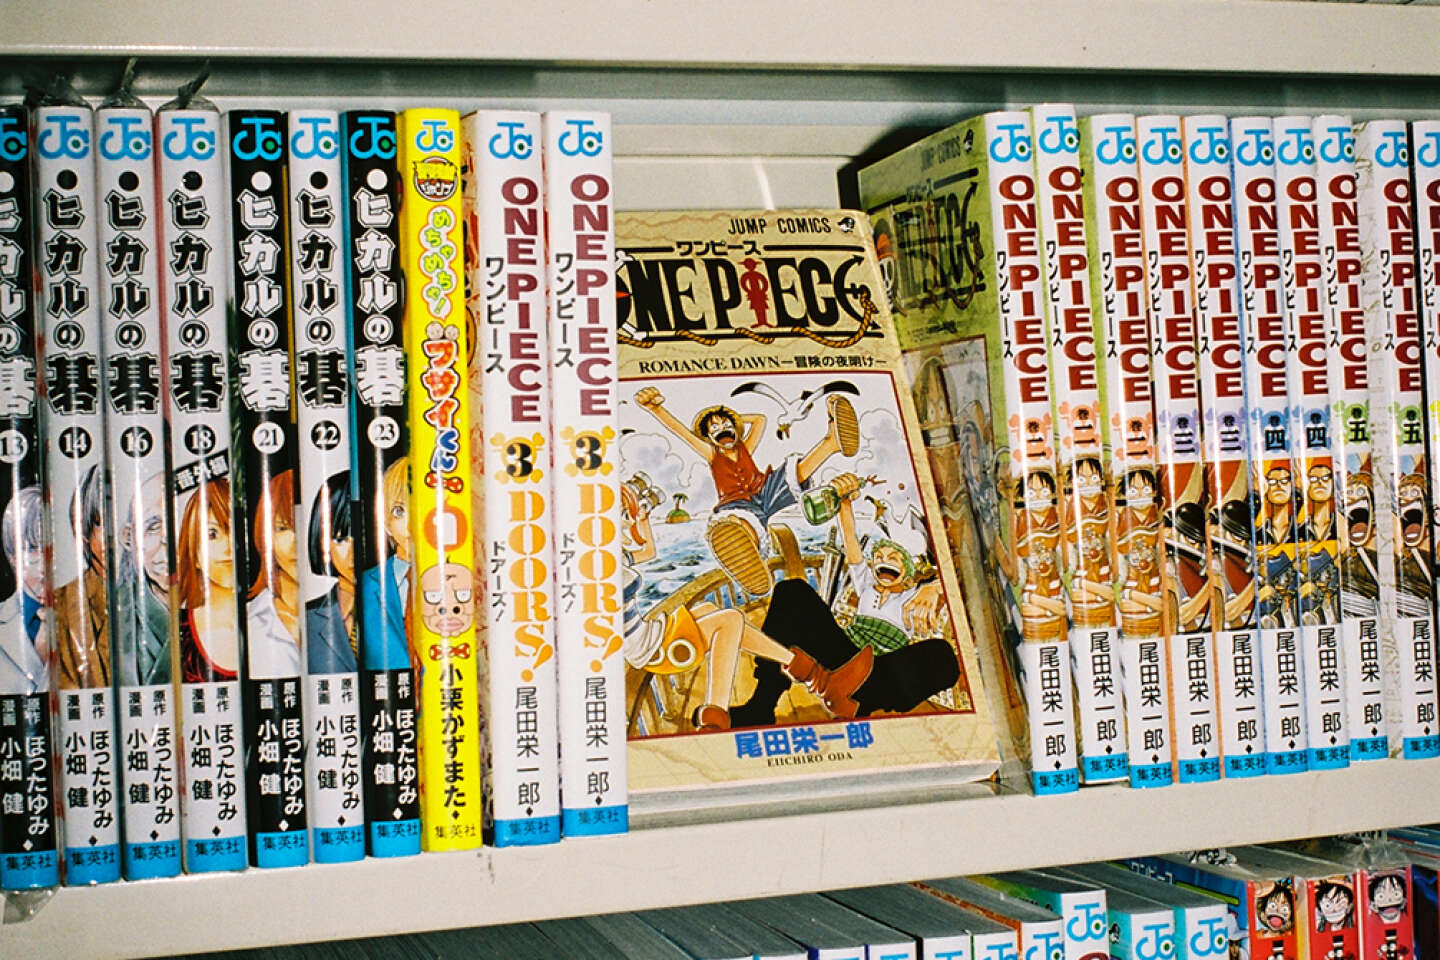 Comme elles intégrale : tome 1 à 13 sur Manga occasion